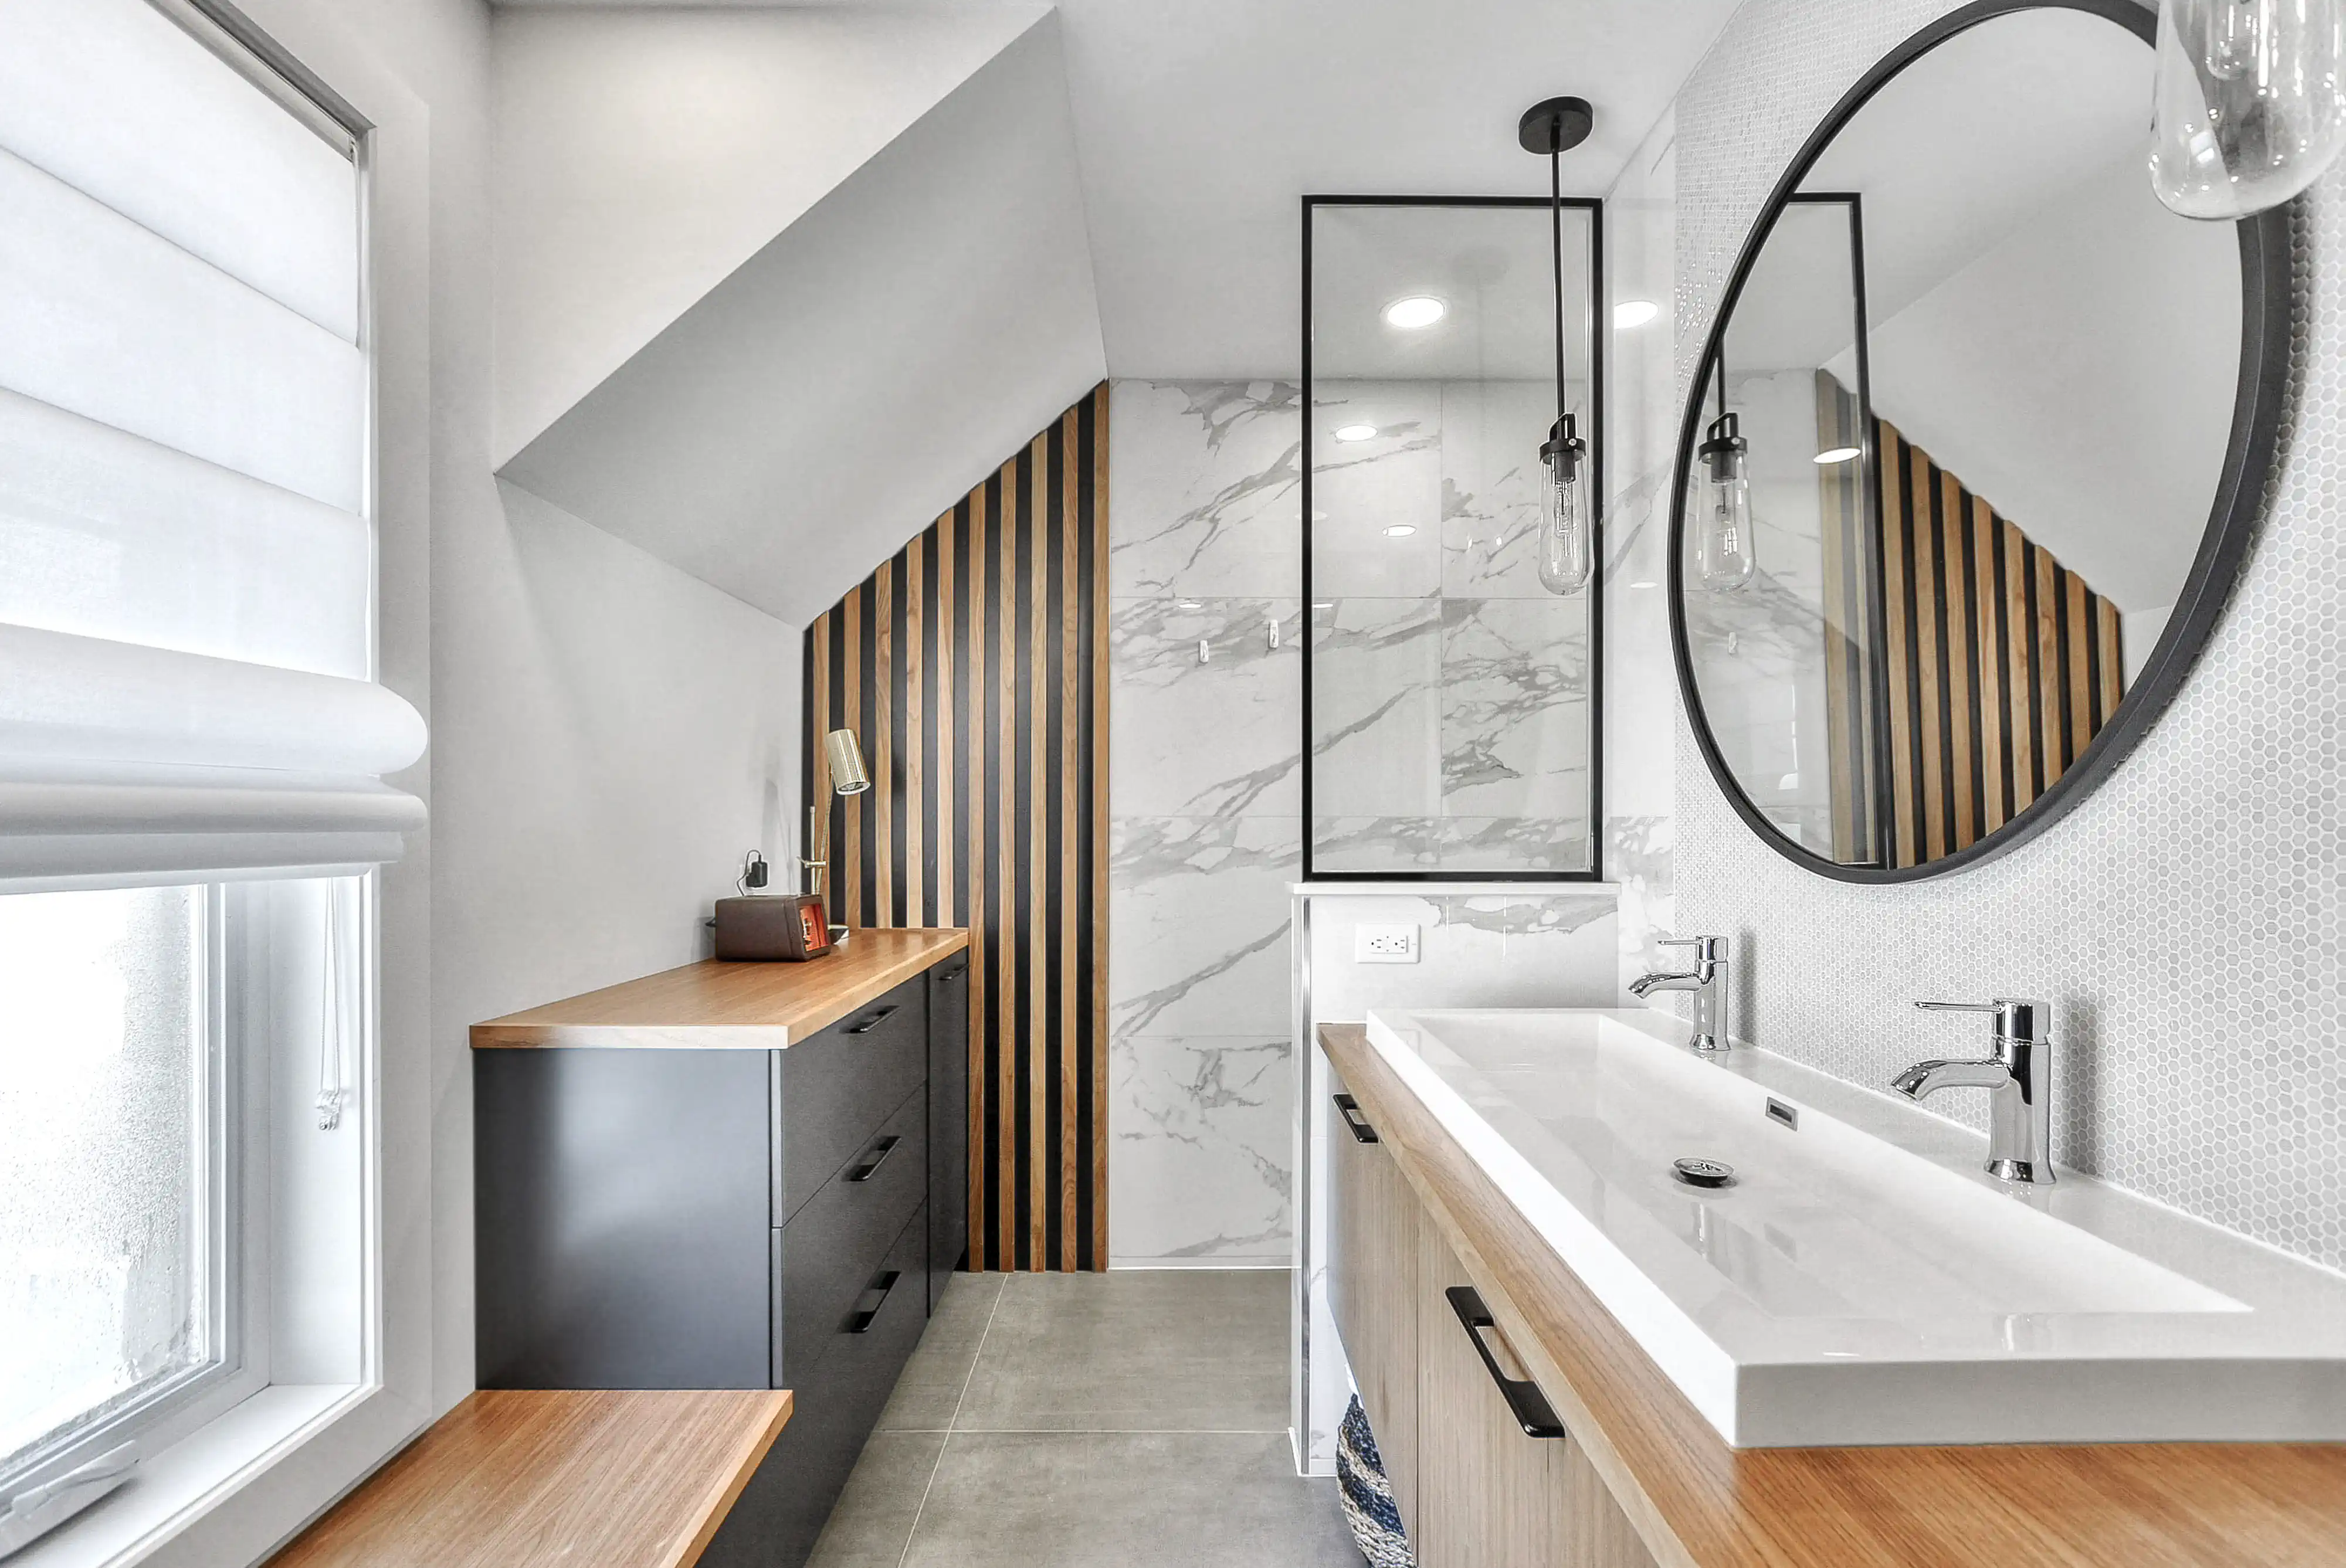 Salle de bain moderne minimaliste avec des murs en marbre blanc, une double vasque et une douche avec porte en verre, intérieur signé Sarah Brown Design